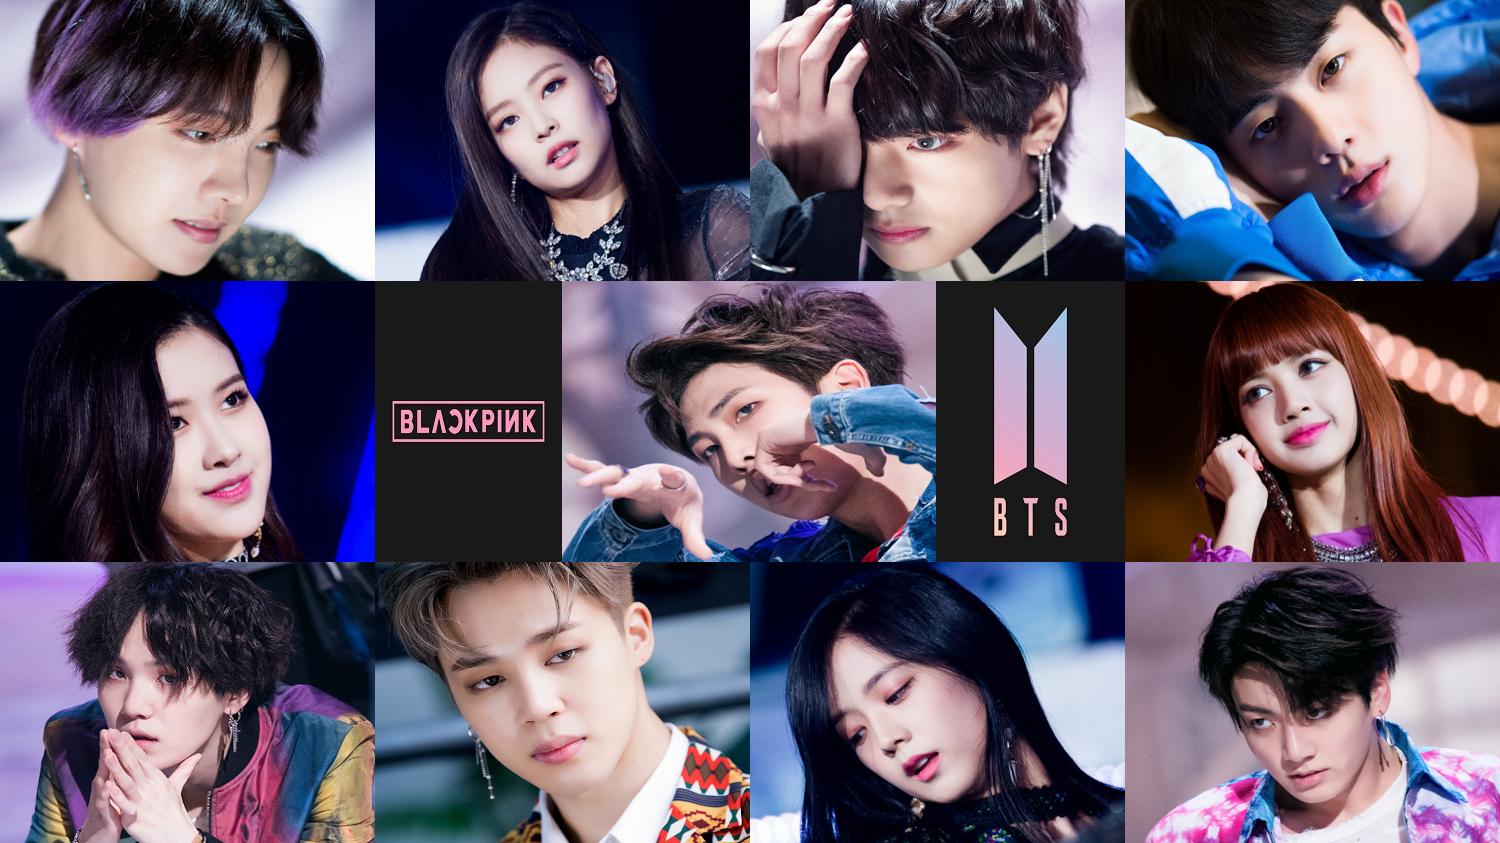 Free download BTS BLACKPINK WALLPAPER Album on Imgur [1500x843